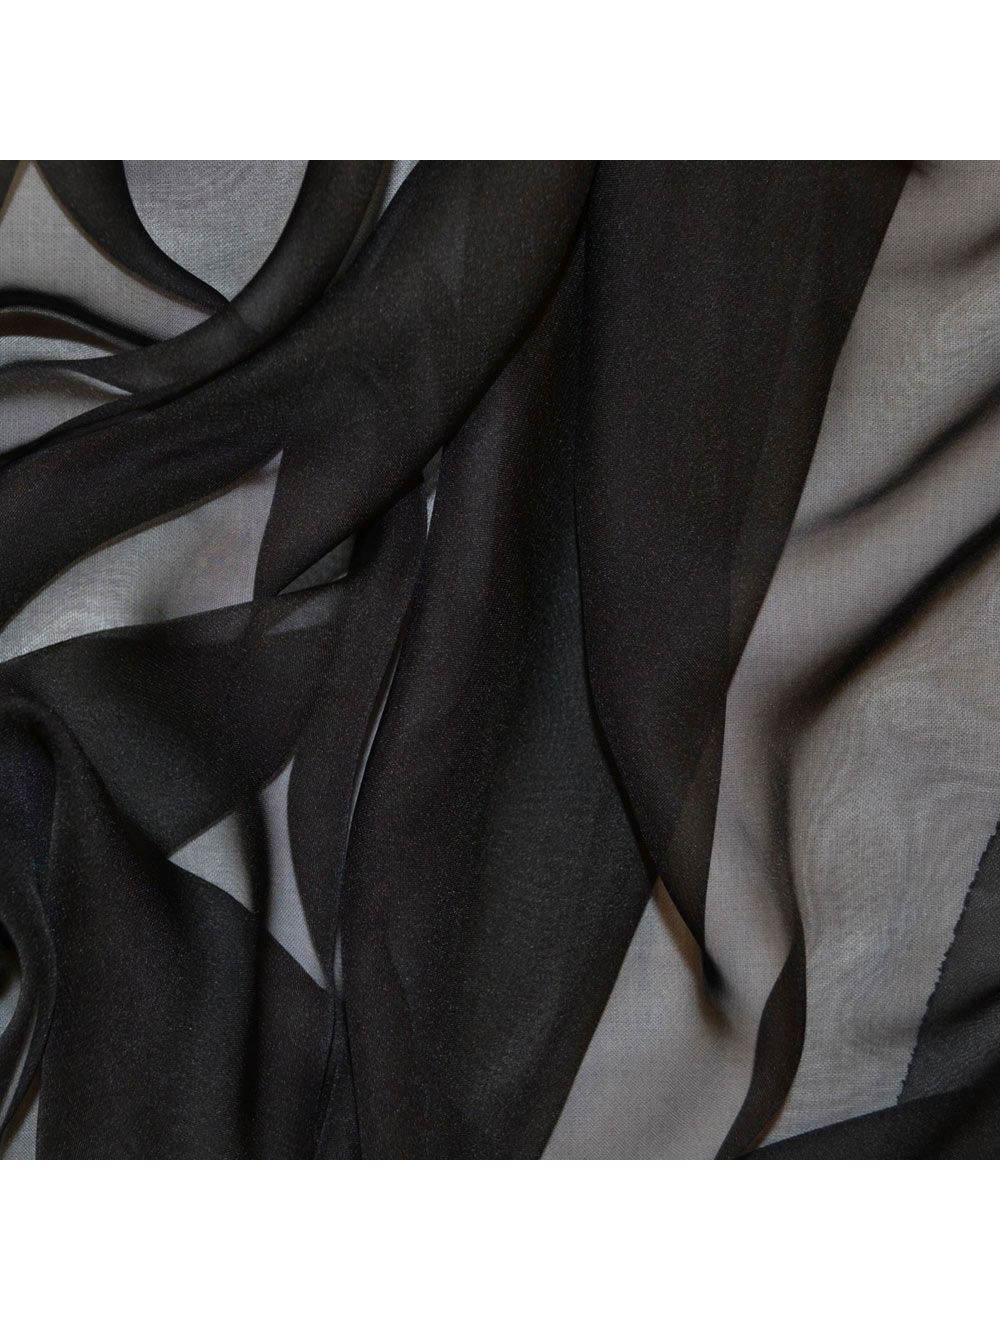 Black Cationic Chiffon Fabric | Chiffon Fabric | Calico Laine